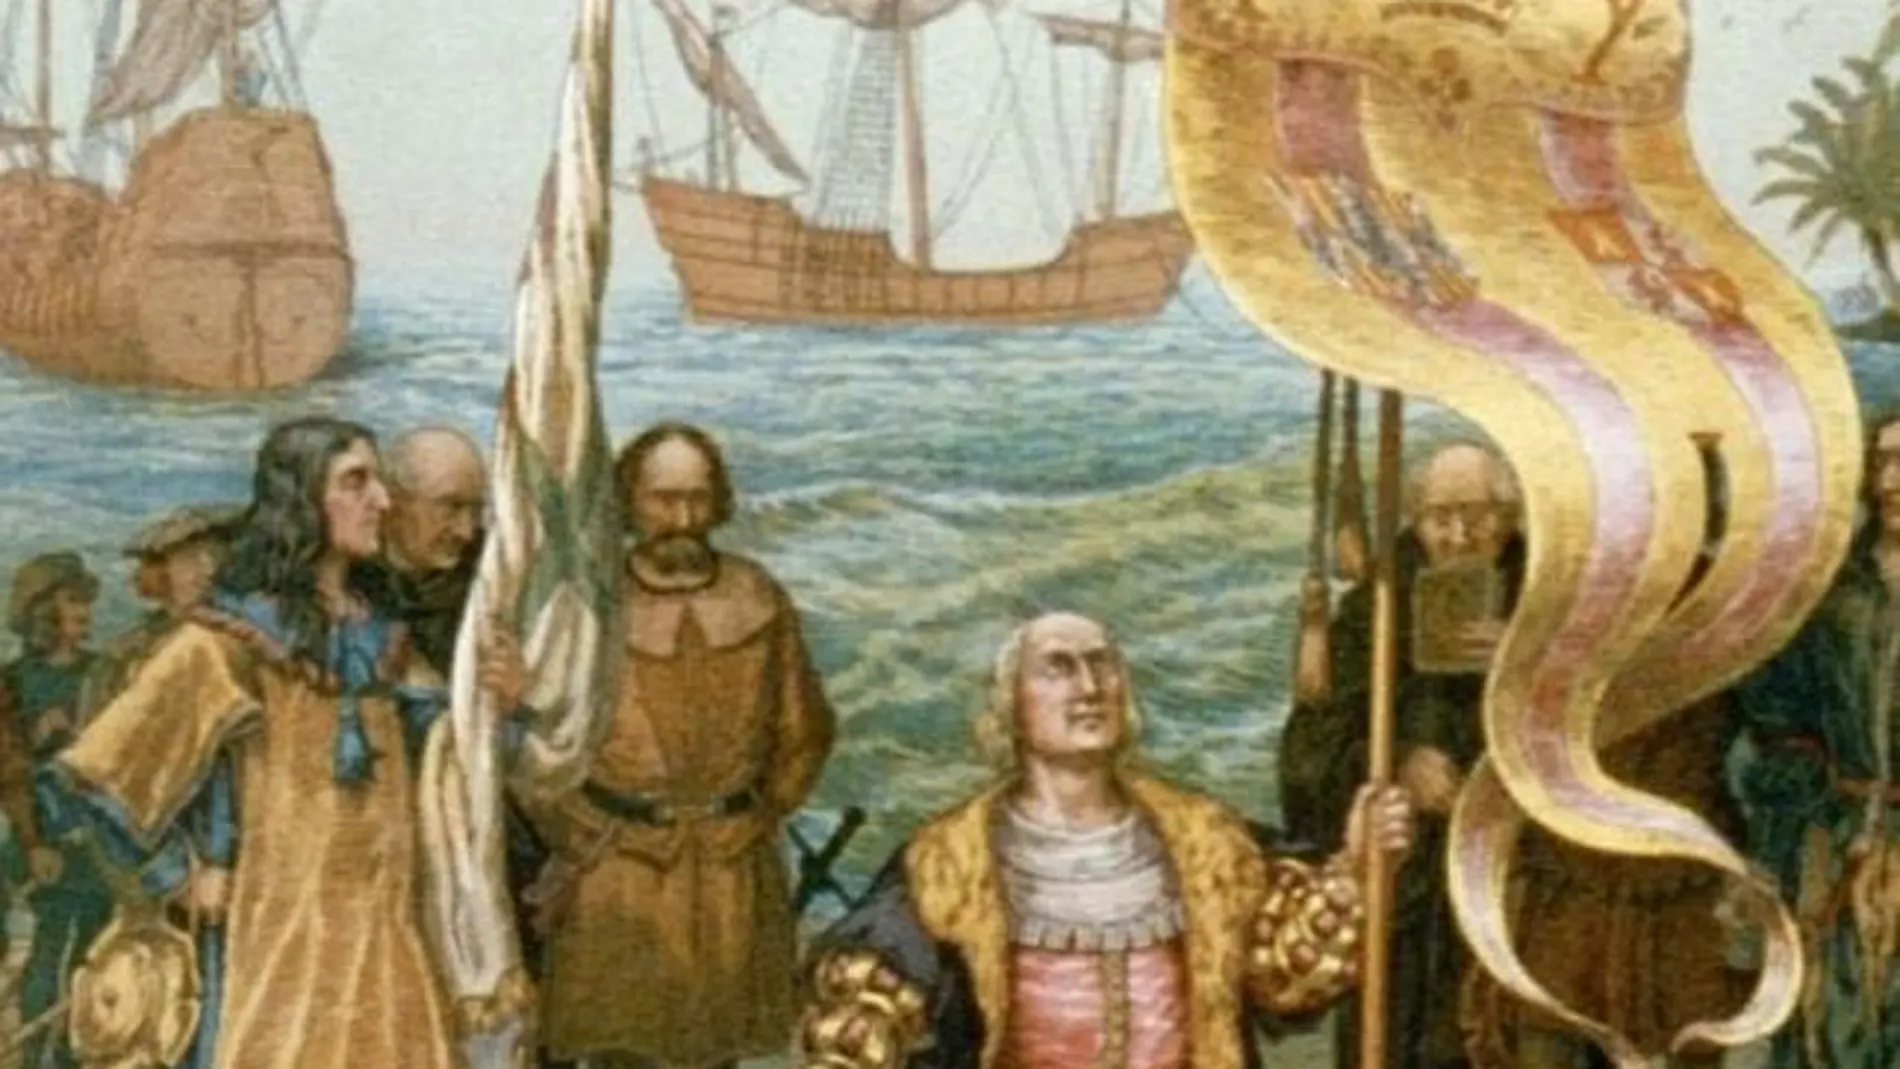 Los musulmanes llegaron a América 300 años antes que Colón, según Erdogán